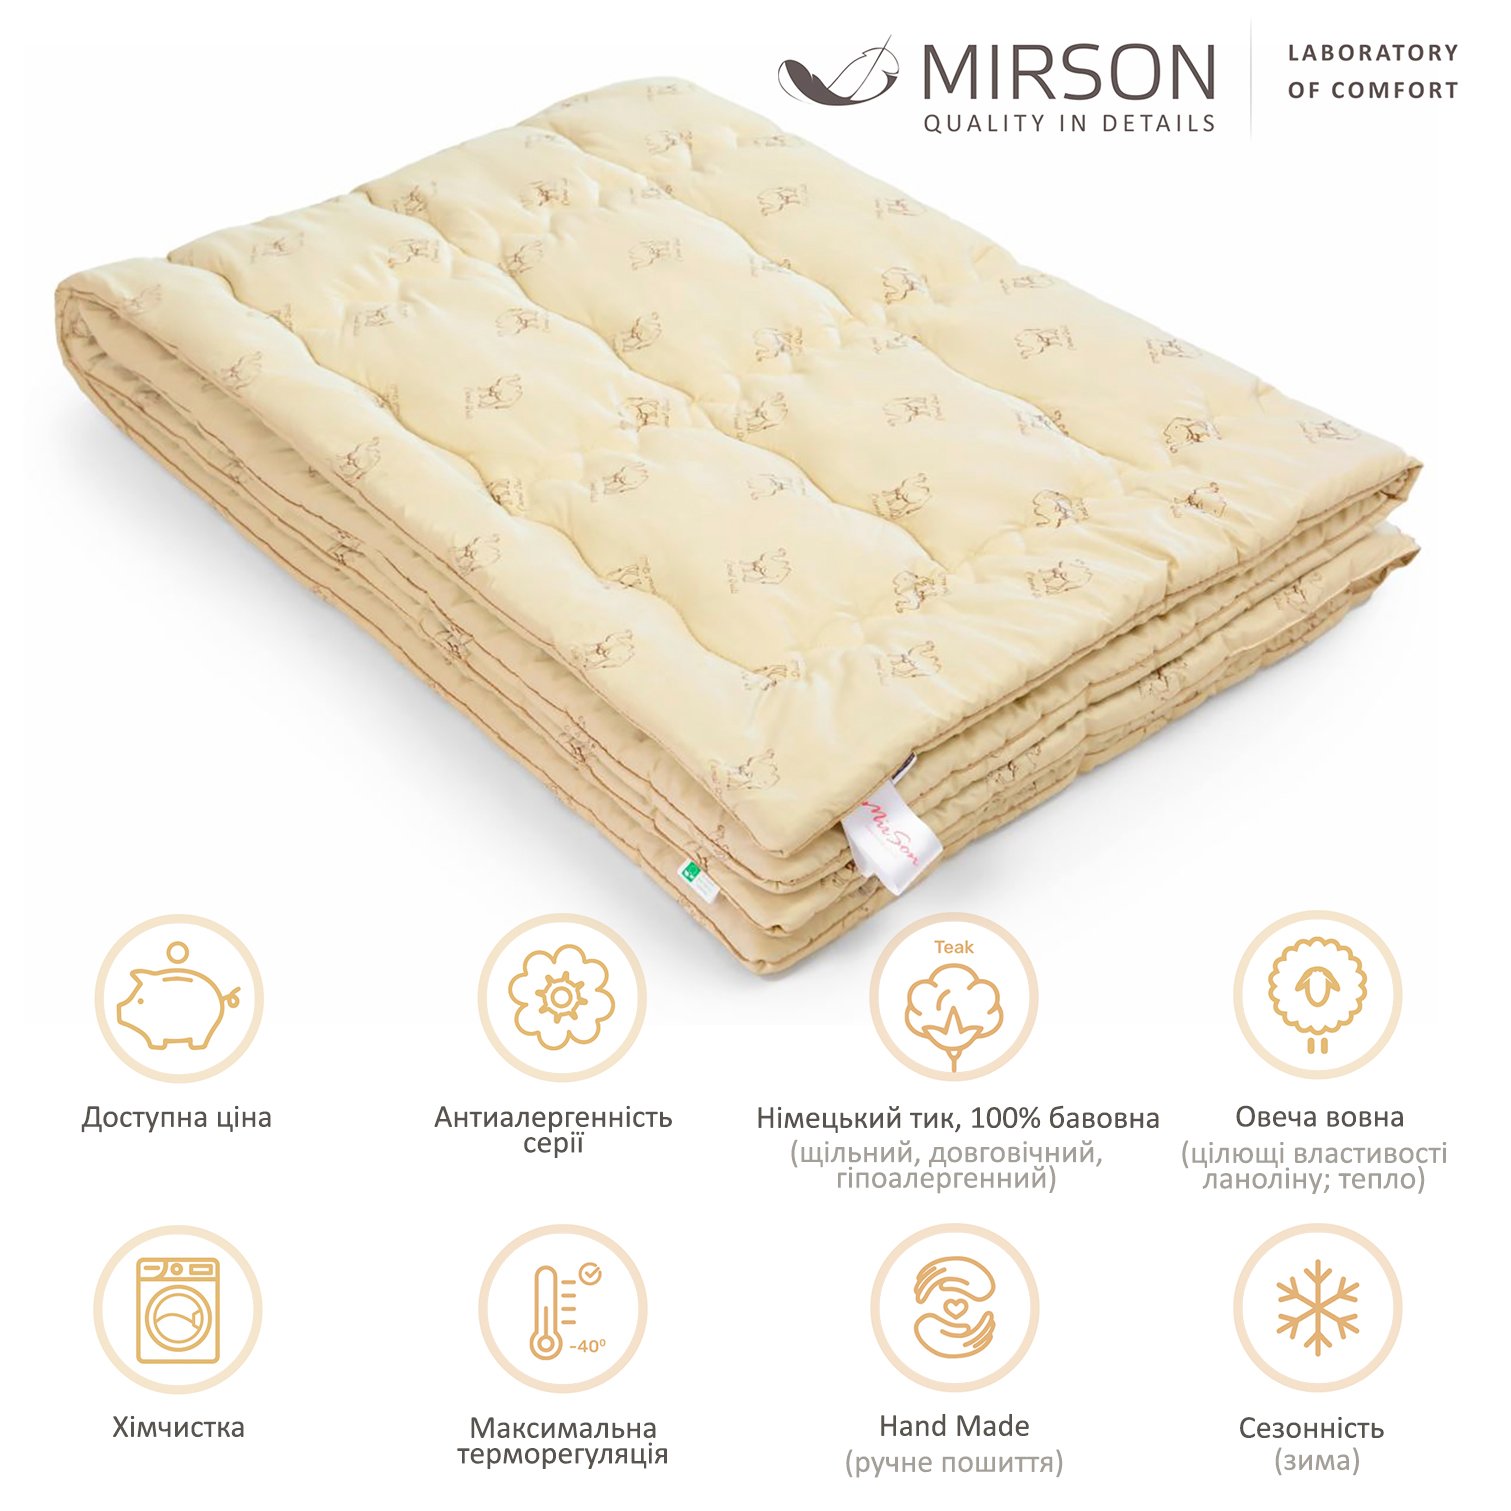 Одеяло шерстяное MirSon Gold Camel Hand Made №175, зимнее, 200x220 см, кремовое - фото 4